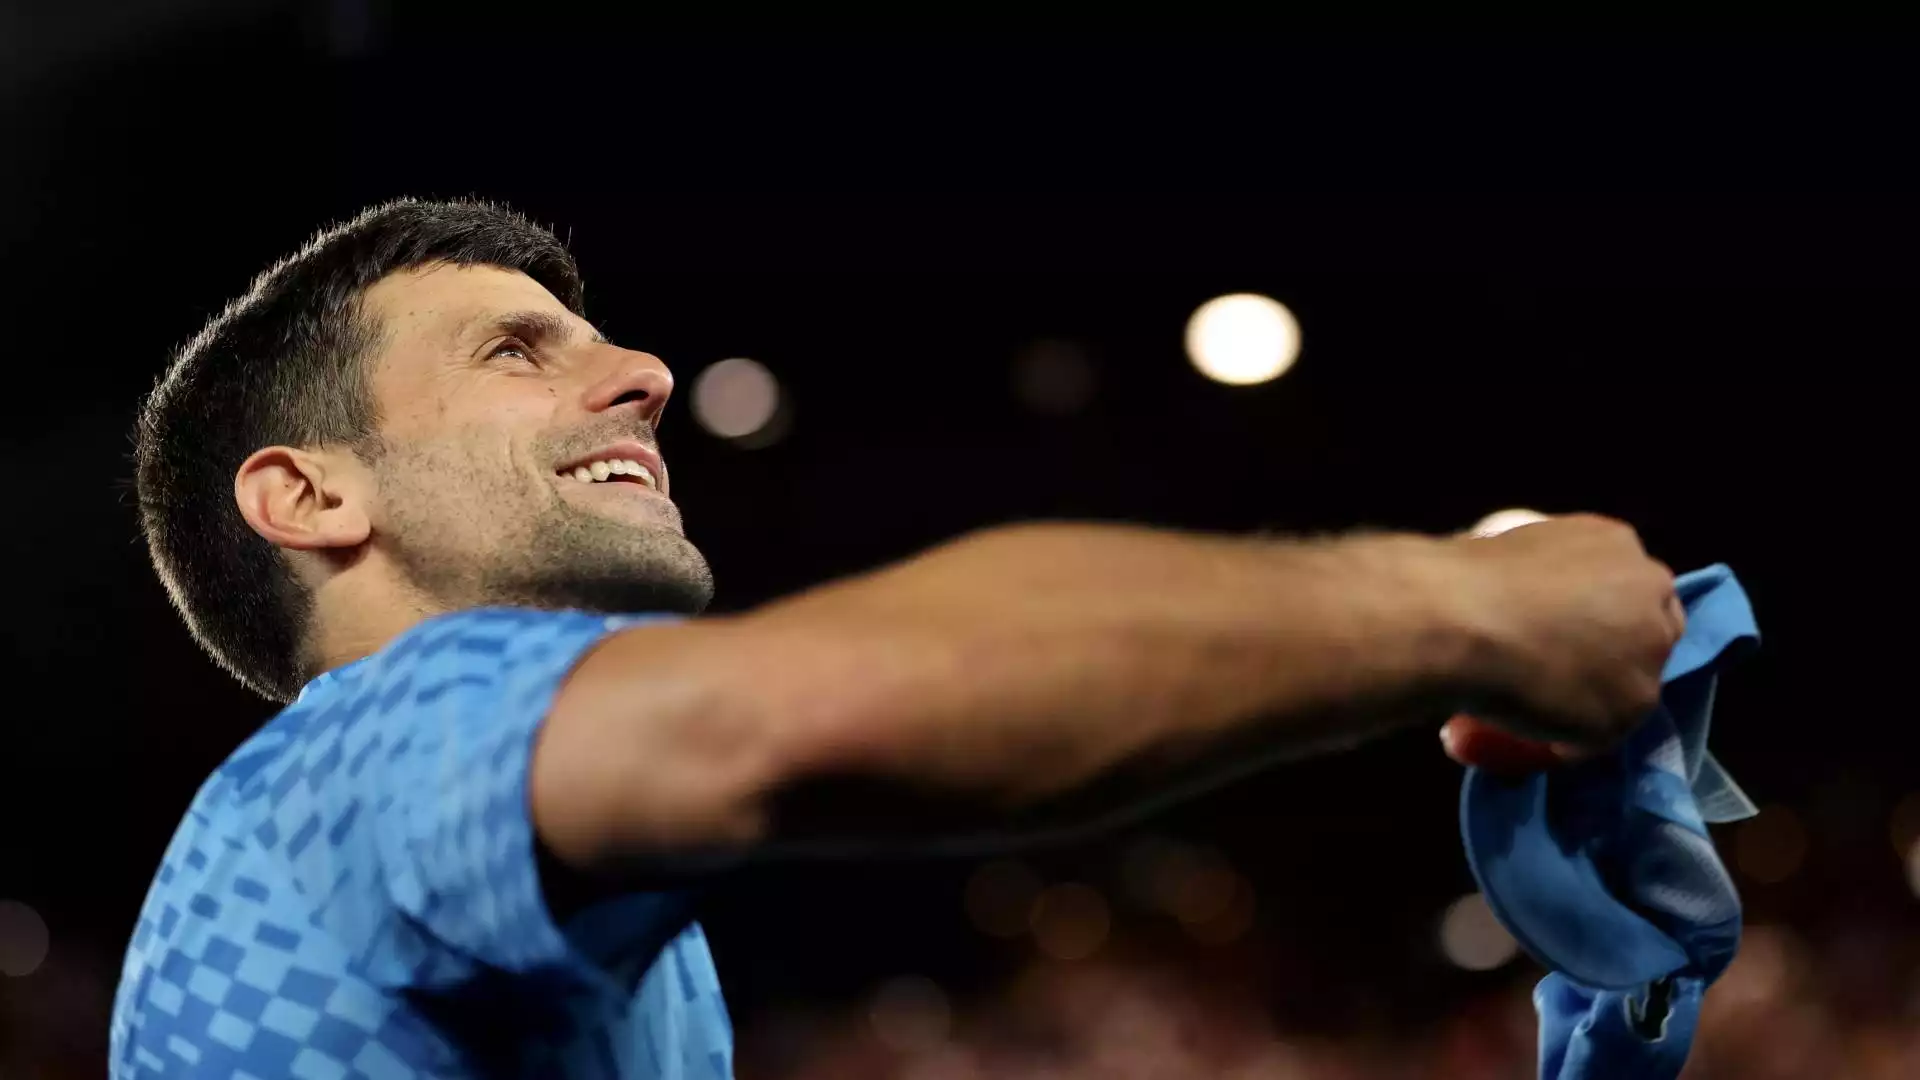 Djokovic continua a sognare il decimo titolo agli Australian Open, che sarebbe anche il quarto consecutivo